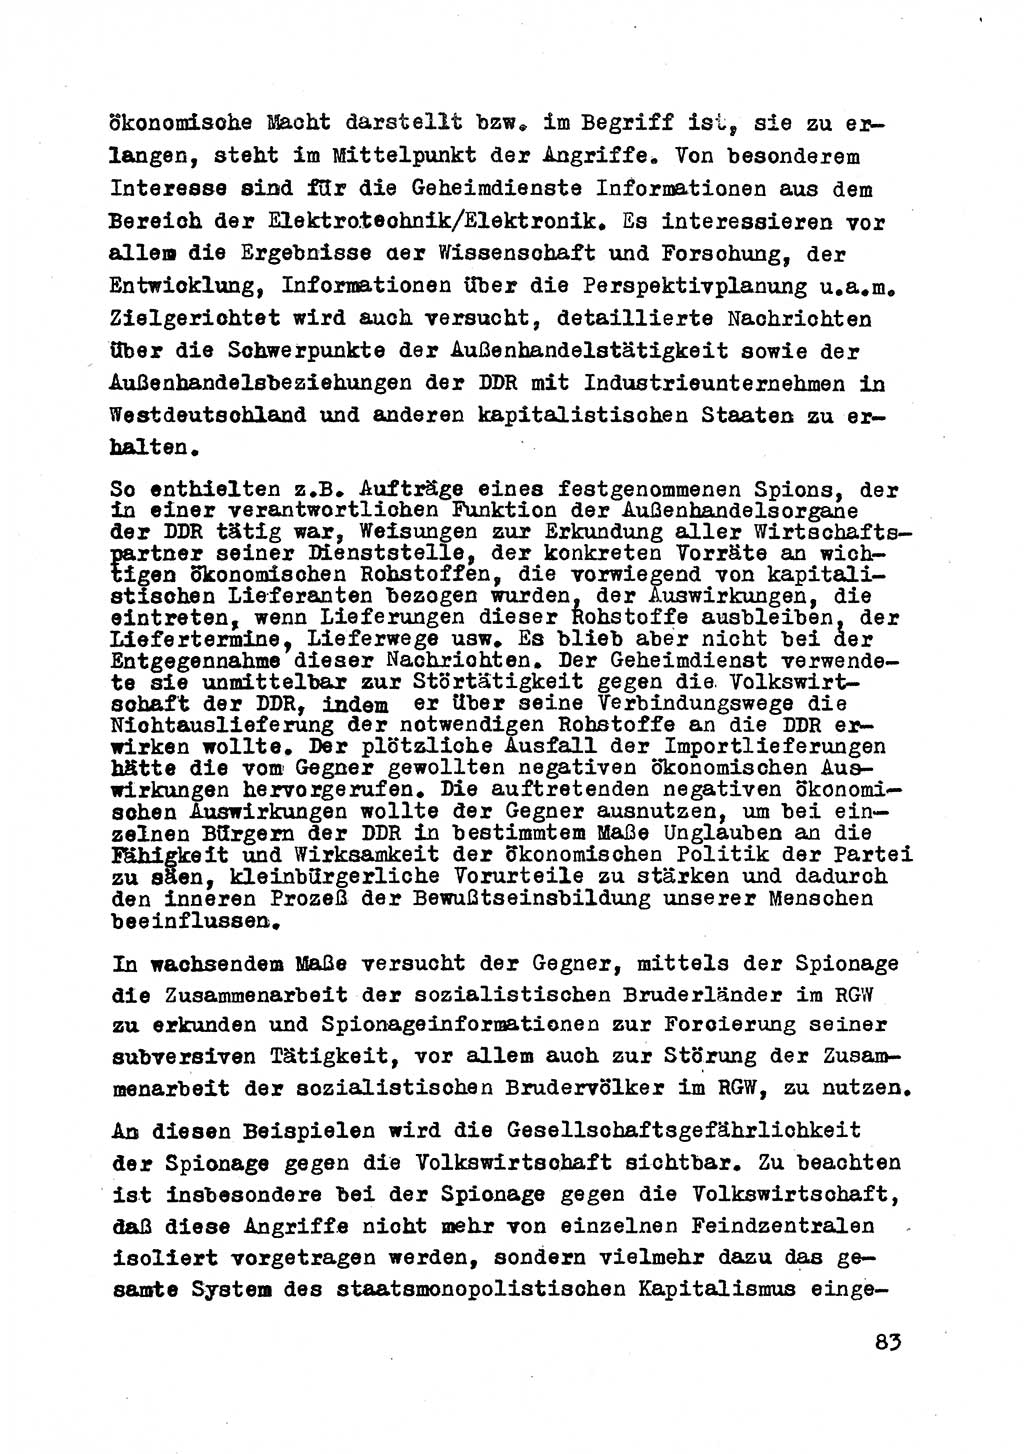 Strafrecht der DDR (Deutsche Demokratische Republik), Besonderer Teil, Lehrmaterial, Heft 2 1969, Seite 83 (Strafr. DDR BT Lehrmat. H. 2 1969, S. 83)